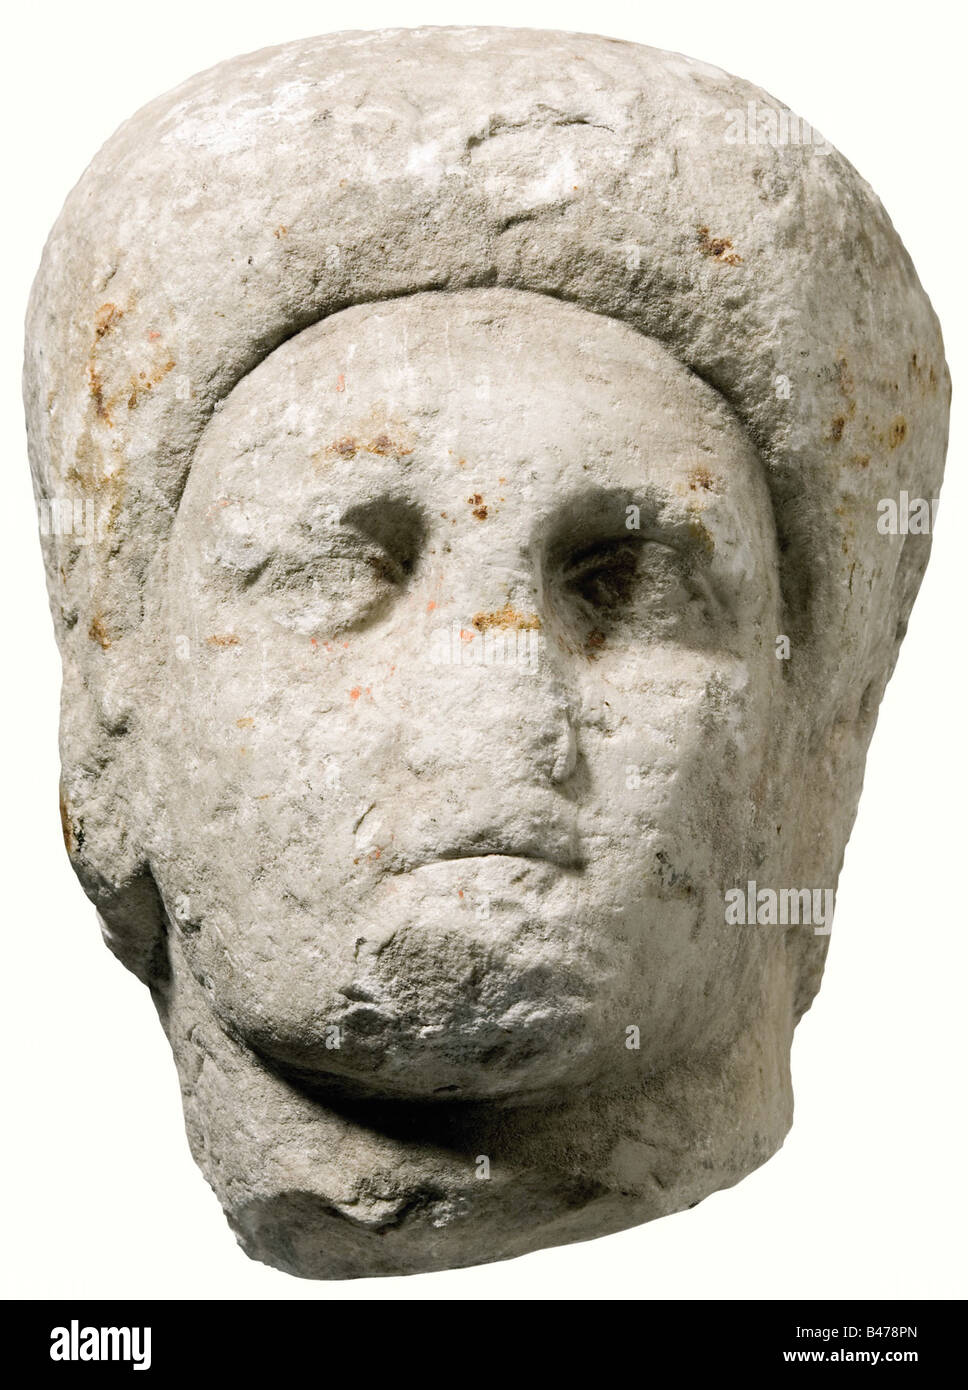 Ein Kopf aus römischem Marmor, der aus weißem Marmor und leicht zur Seite gewendet wurde, aus dem 3. Jahrhundert n.Chr. Kopf eines Mannes. Haare in kleinen lockigen Schlössern, Ohren sind angedeutet. Nase und Kinn mit starken Abschürfungen. Höhe 23,5 cm. Historisch, historisch, alt, alt, alt, alt, Objekt, Objekte, Fotos, Schnitten, Ausschnitte, Ausschnitte, Skulpturen, Skulpturen, Statuette, Figurinen, Figurinen, Statuetten, Bildende Kunst, Kunst, Stockfoto